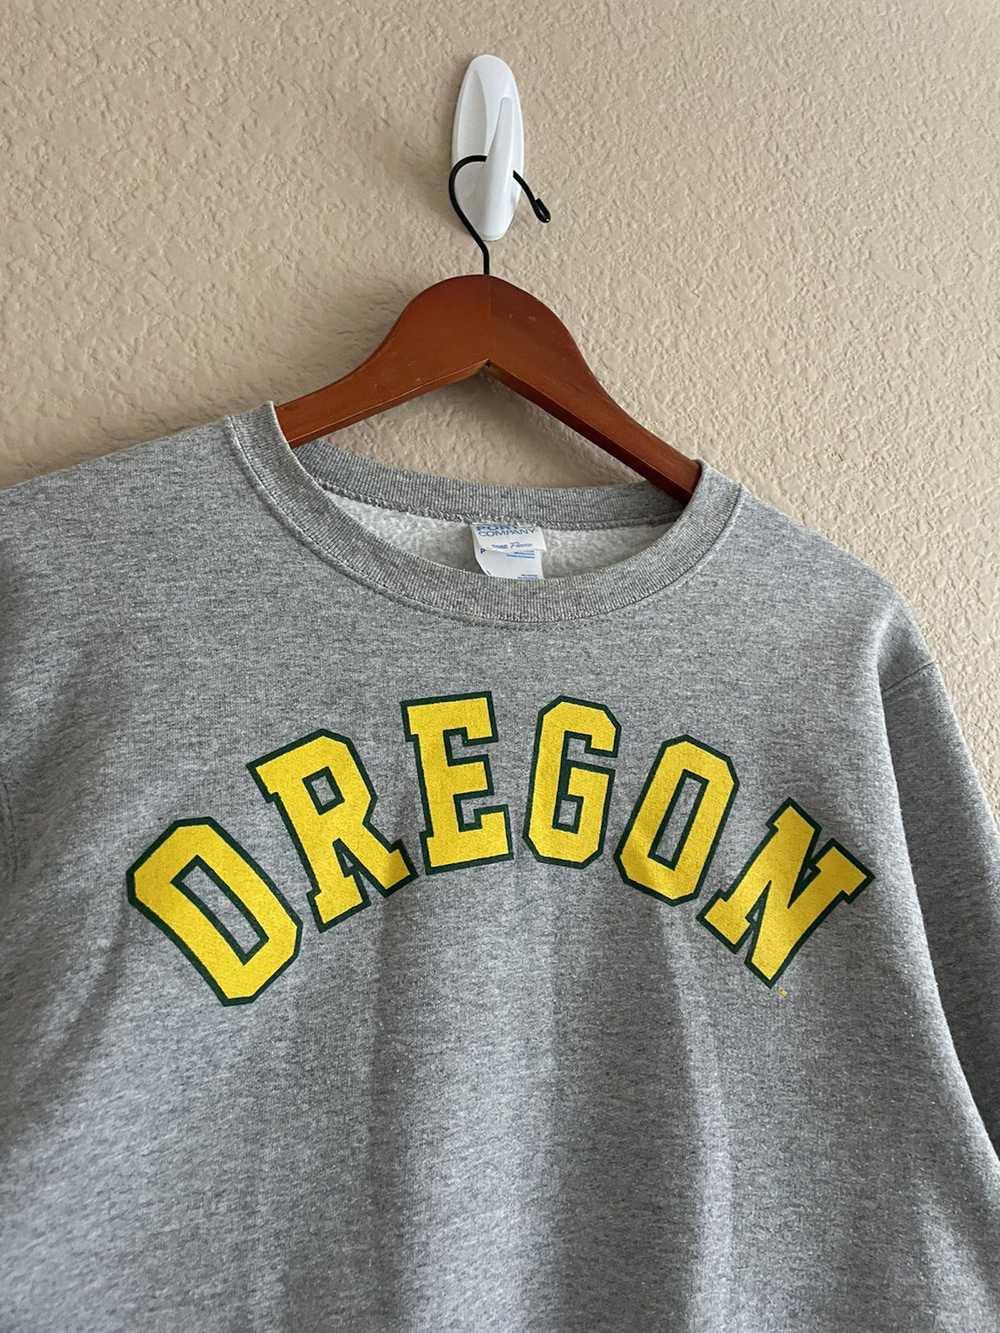 American College × Streetwear × Vintage Grey Oreg… - image 3